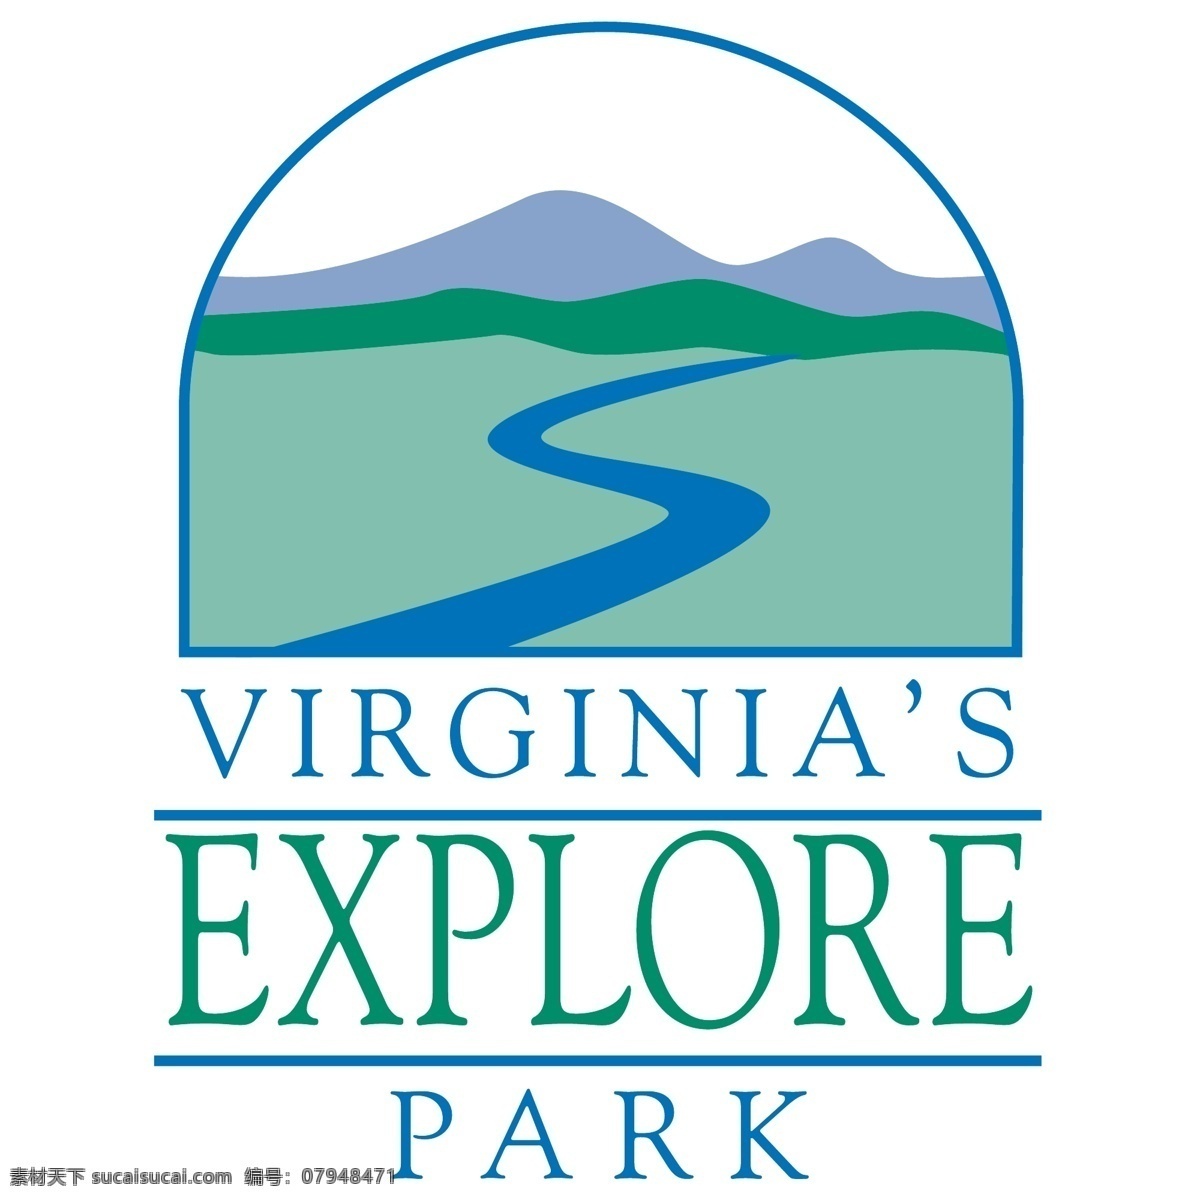 弗吉尼亚州 公园 探讨 自由 探索 标志 弗吉尼亚 免费 psd源文件 logo设计